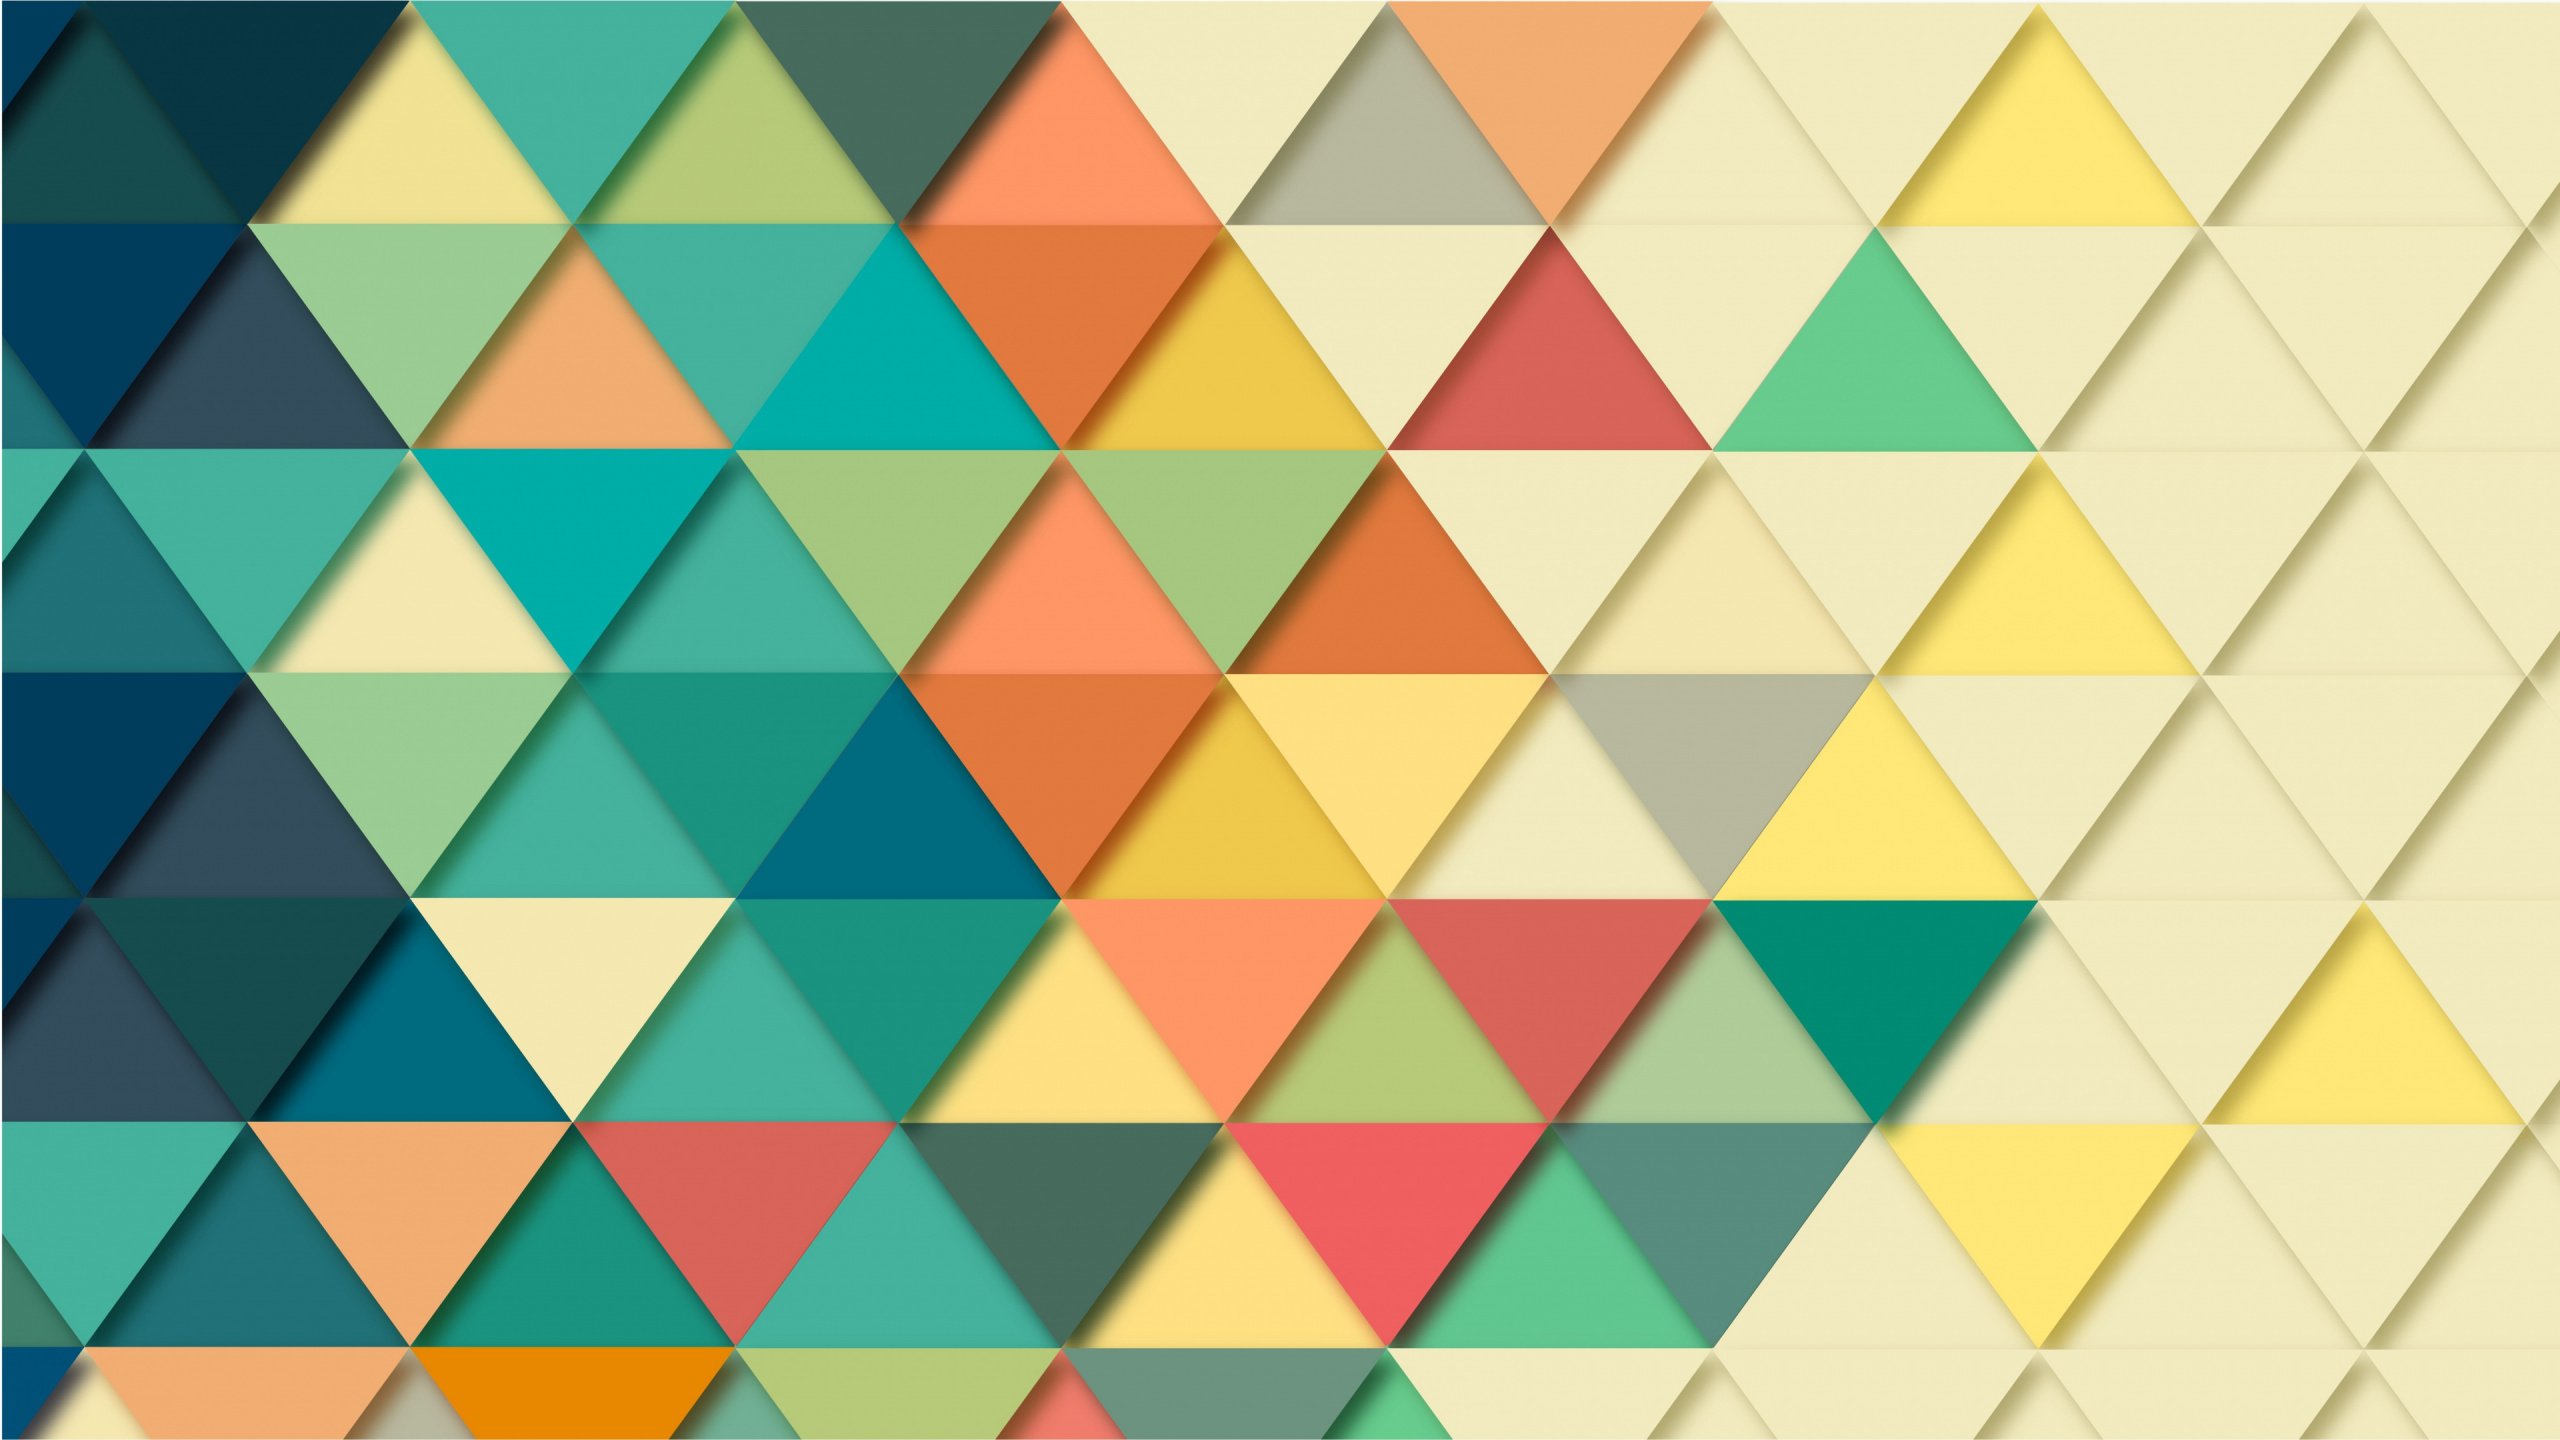 Blau-gelb-weiß Kariertes Muster. Wallpaper in 2560x1440 Resolution